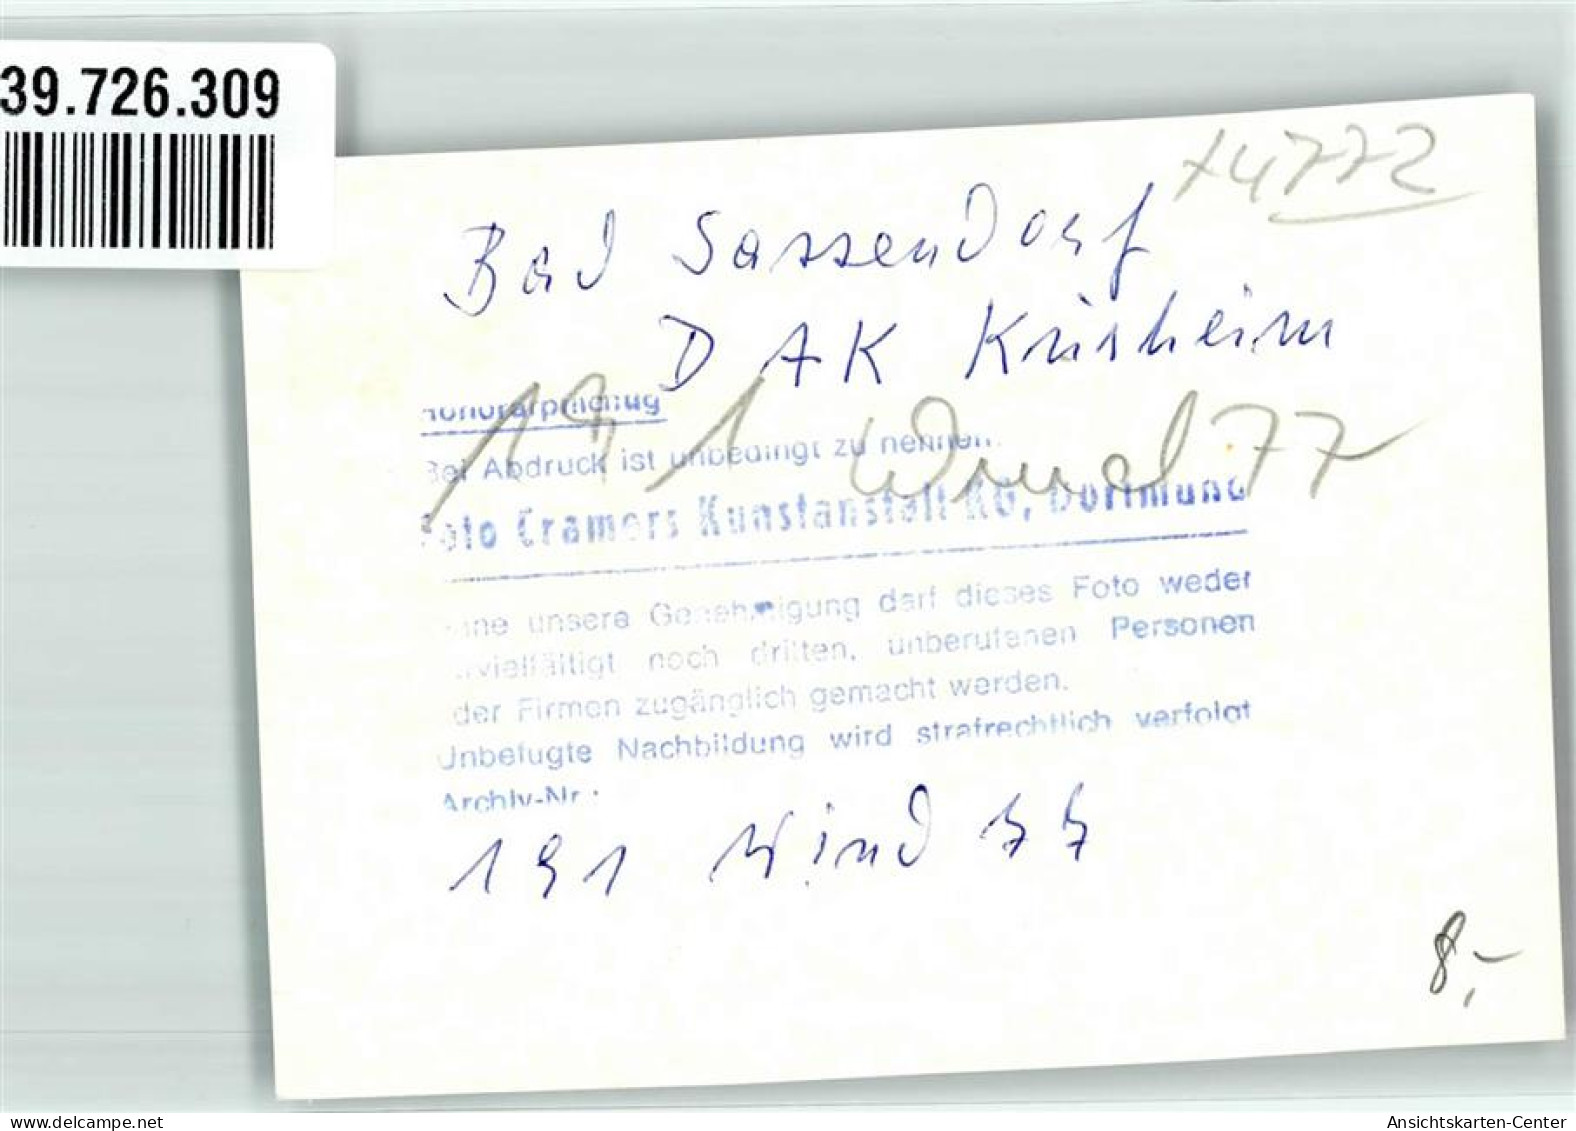 39726309 - Bad Sassendorf - Bad Sassendorf